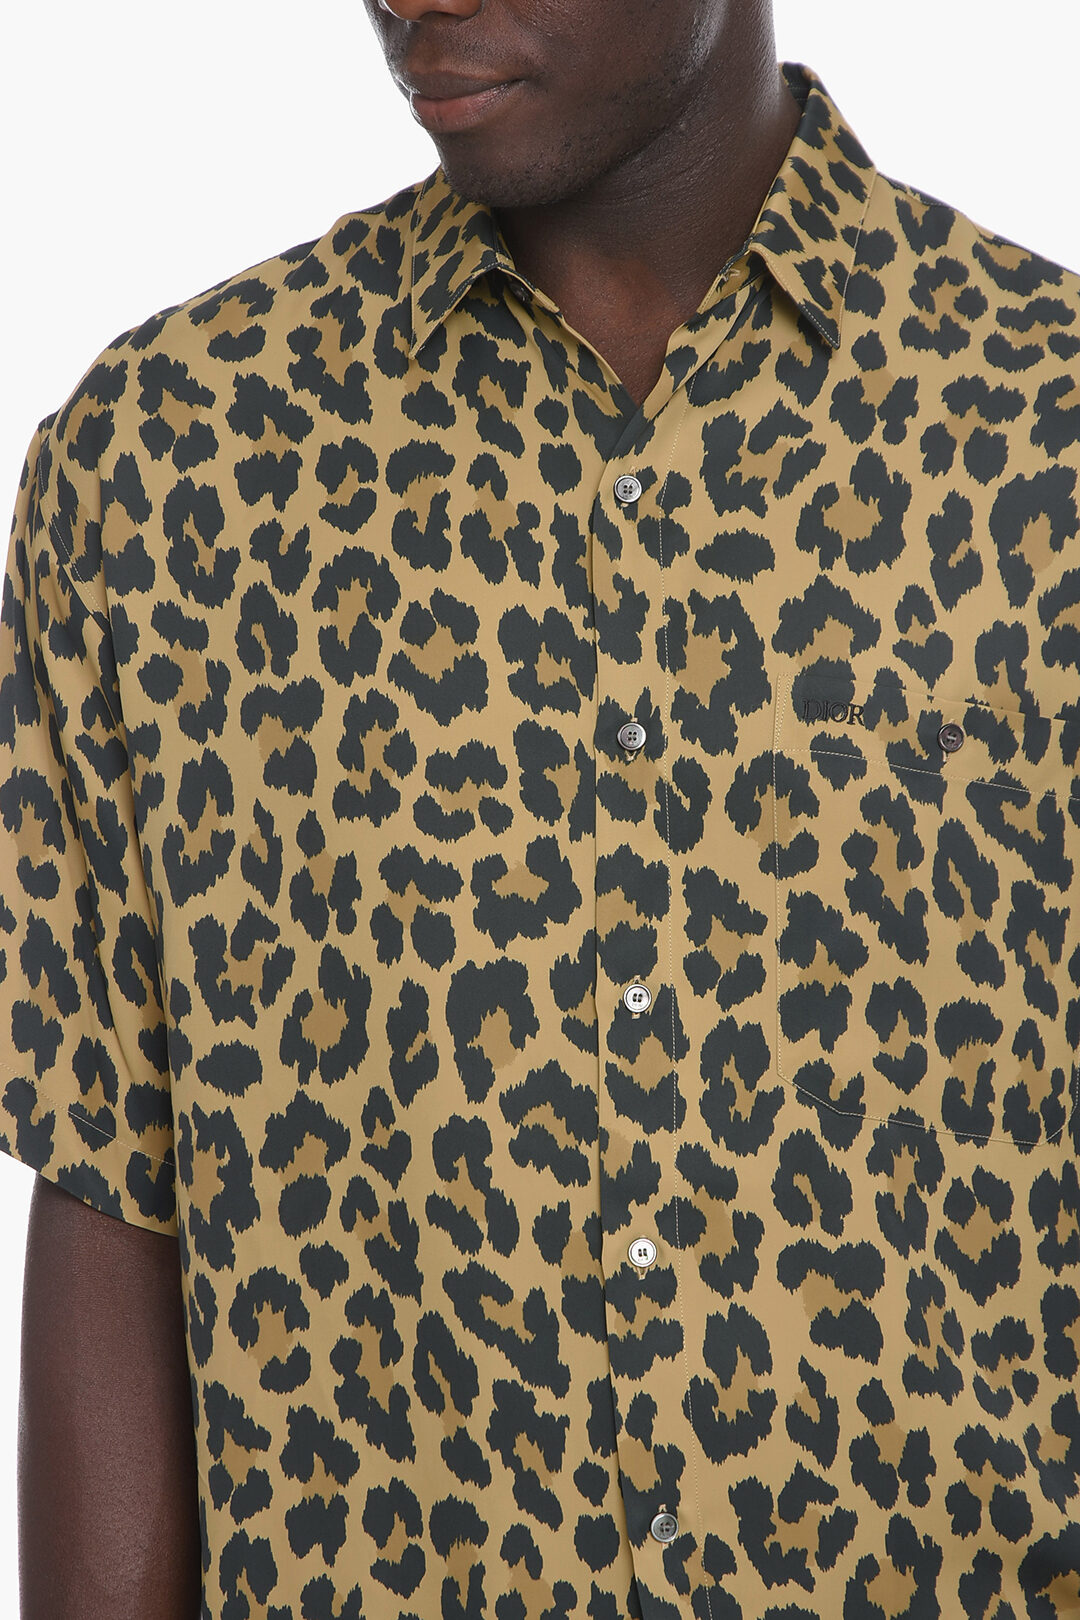 Pattern: Printed Animal Print shirt for men